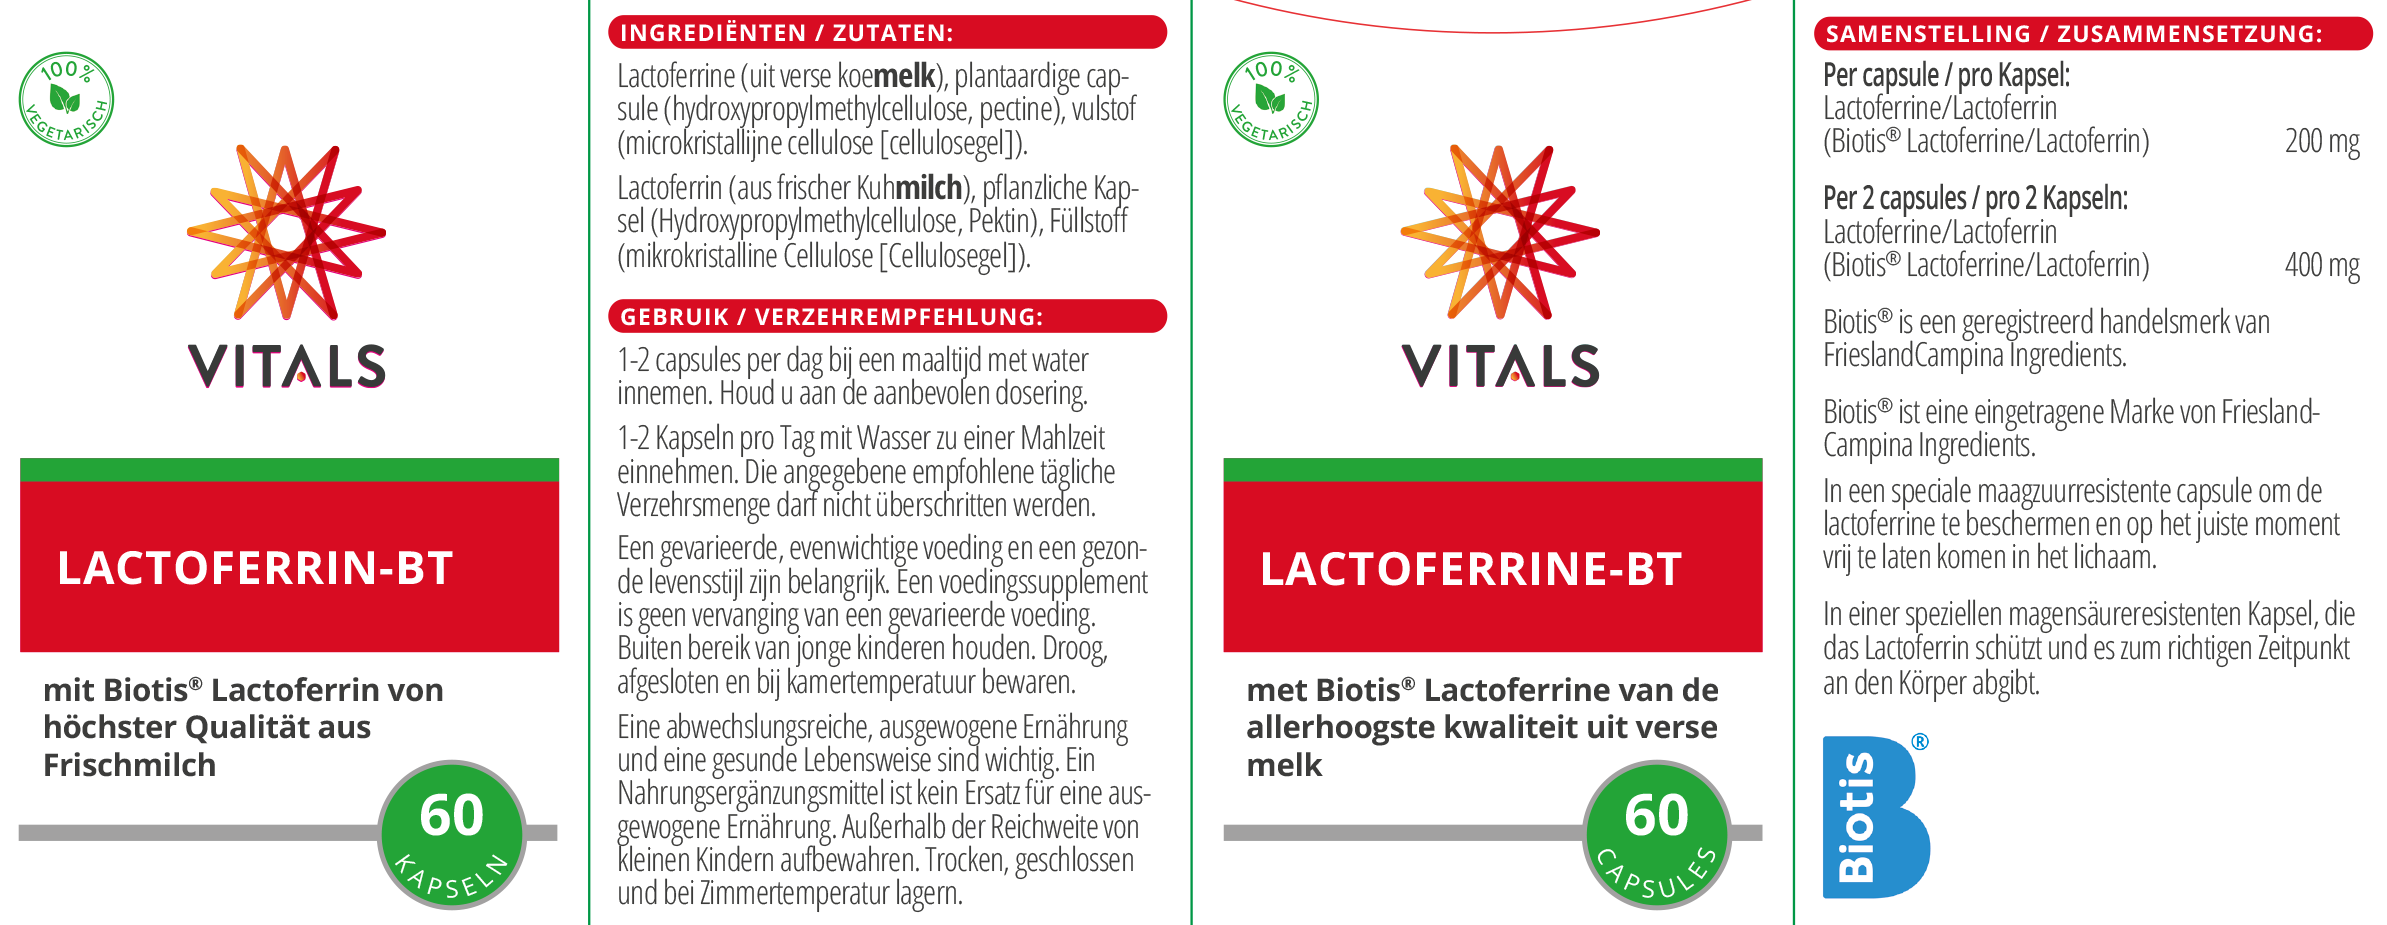 Lactoferrin-BT